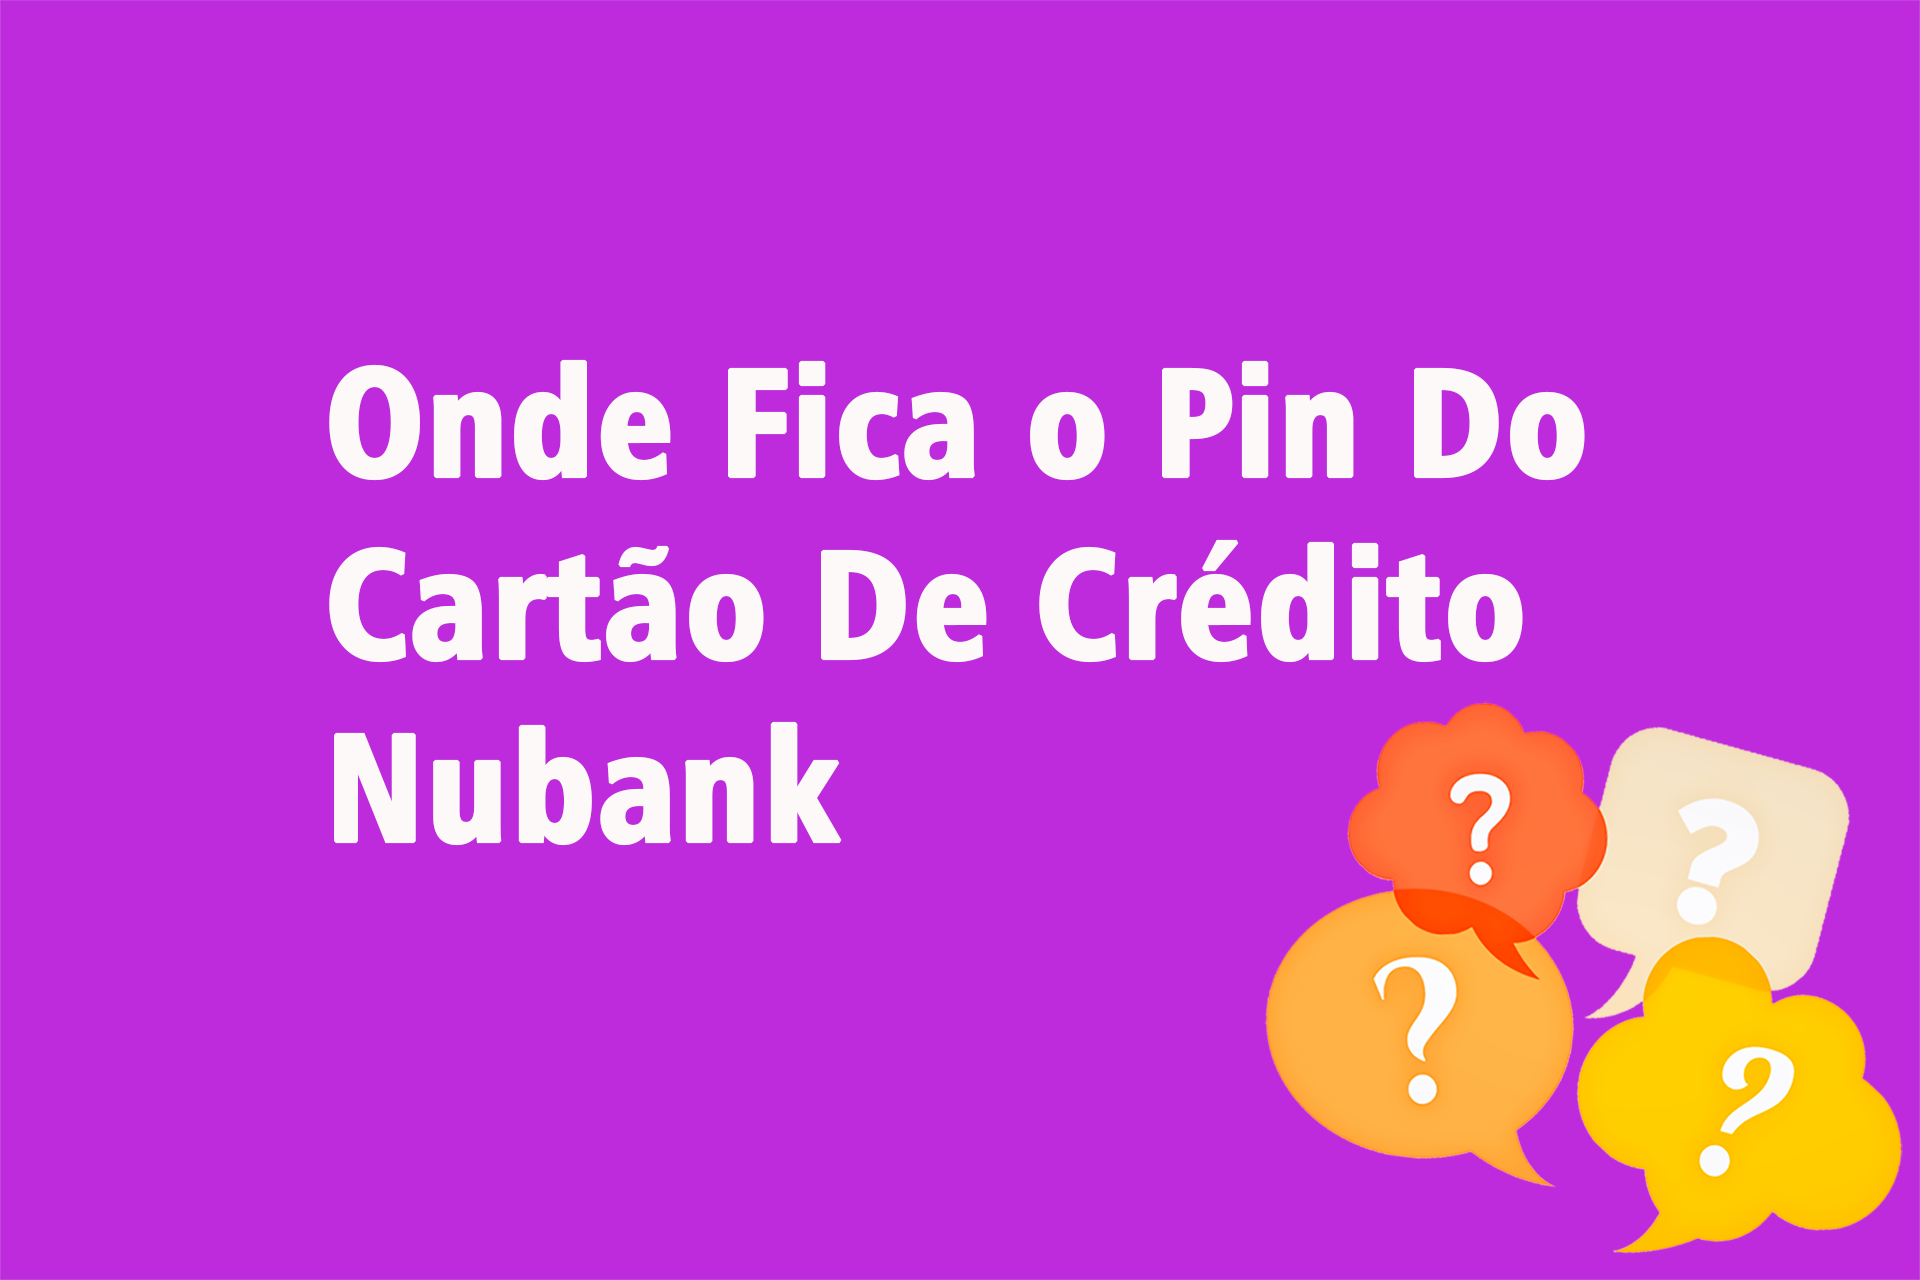 Onde Fica o Pin Do Cartão De Crédito Nubank?